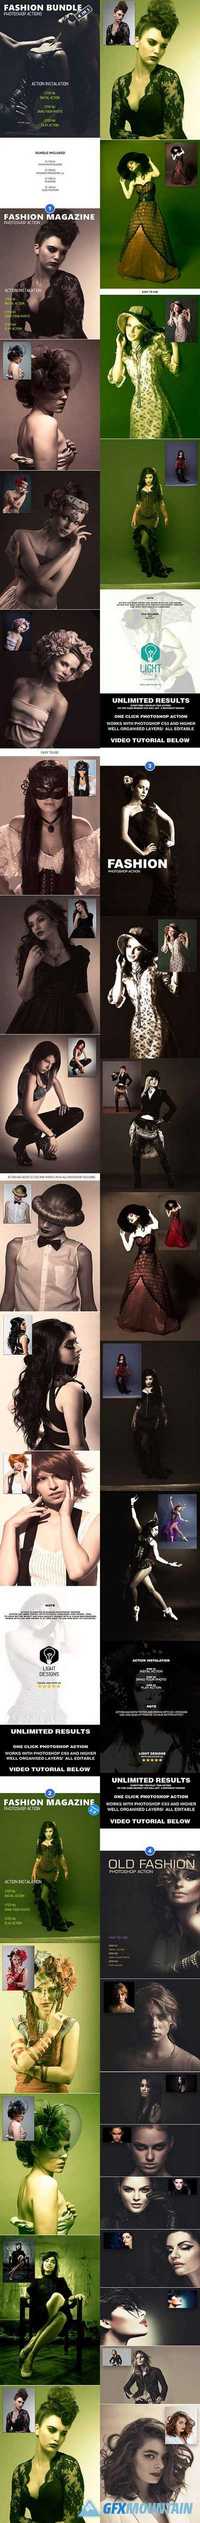 GraphicRiver - Fashion Bundle - Photoshop Actions #5 - 19406389